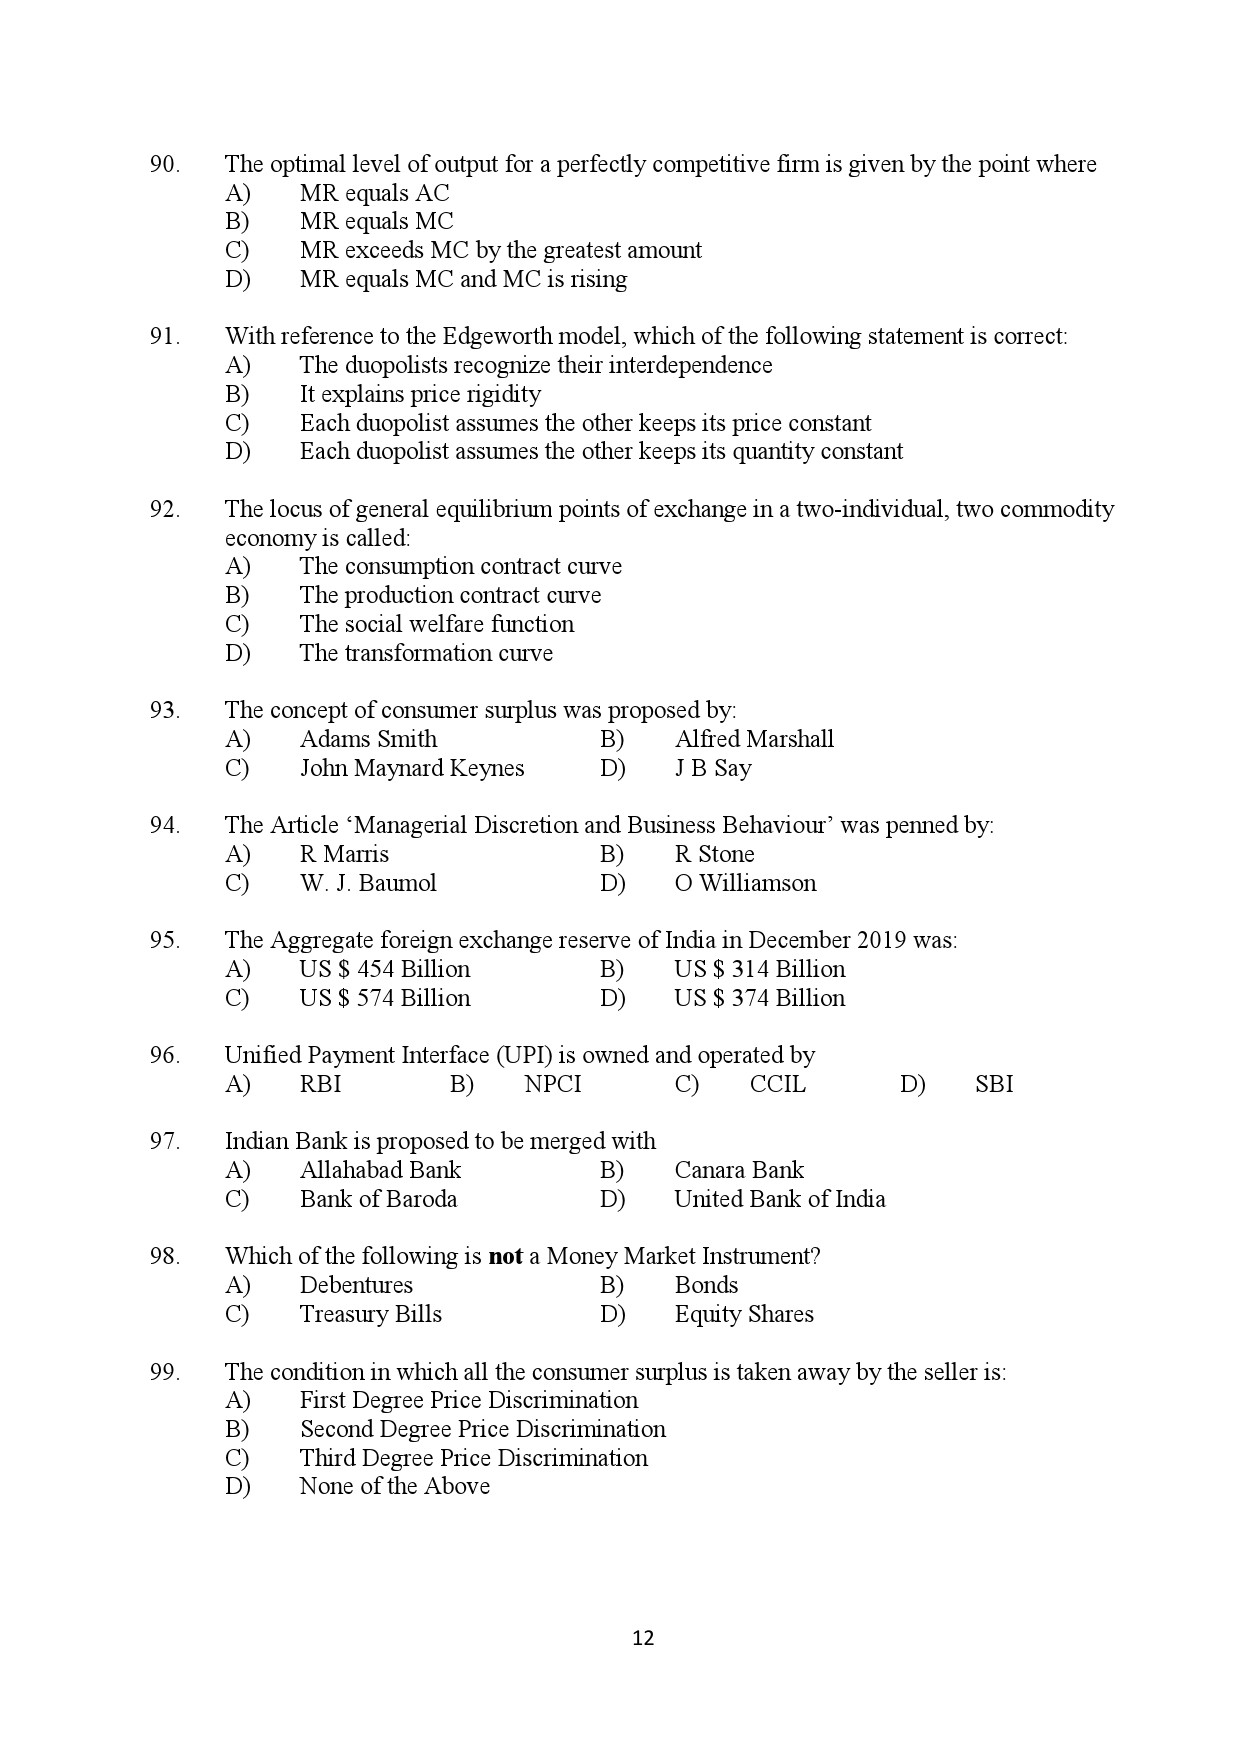 Kerala SET Economics Exam Question Paper February 2020 12